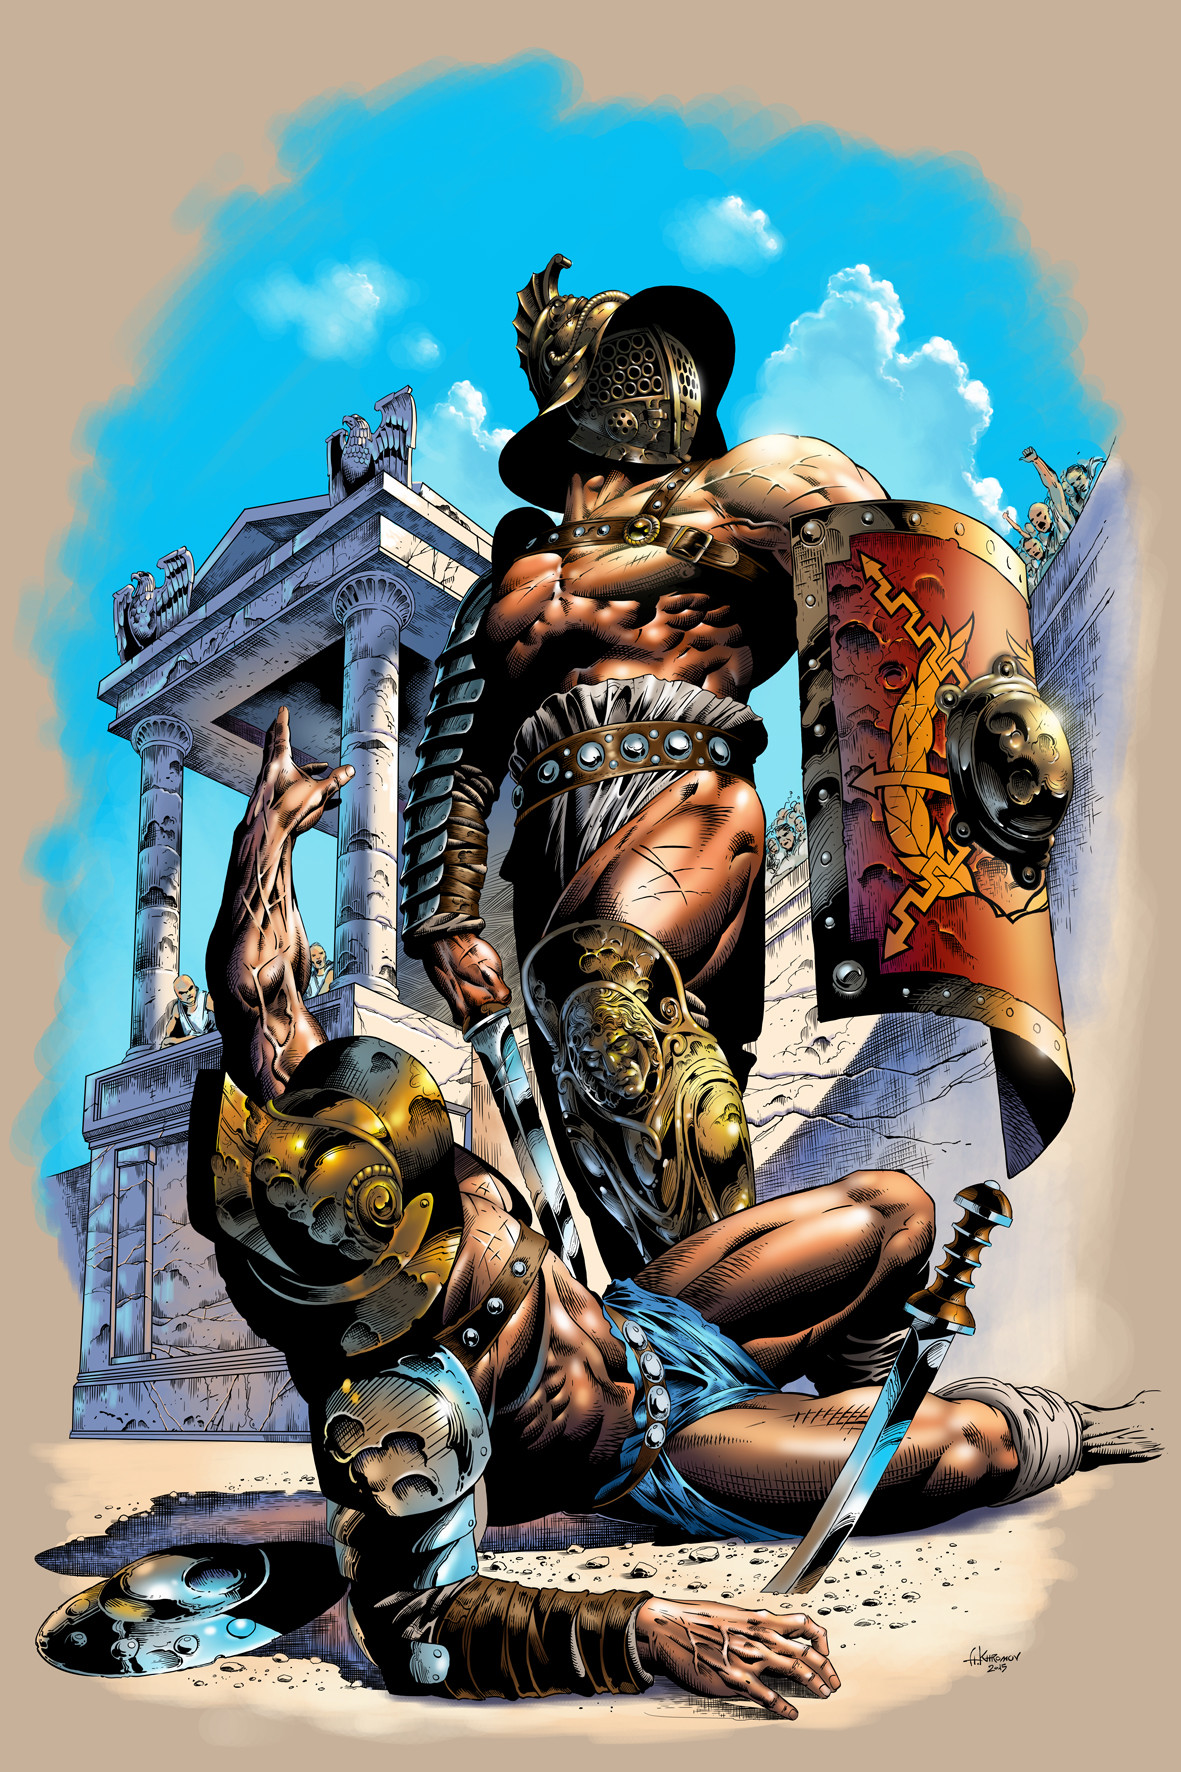 [IMAGE:https://cdna.artstation.com/p/assets/images/images/007/693/266/large/alexander-khromov-gladiators-color.jpg]